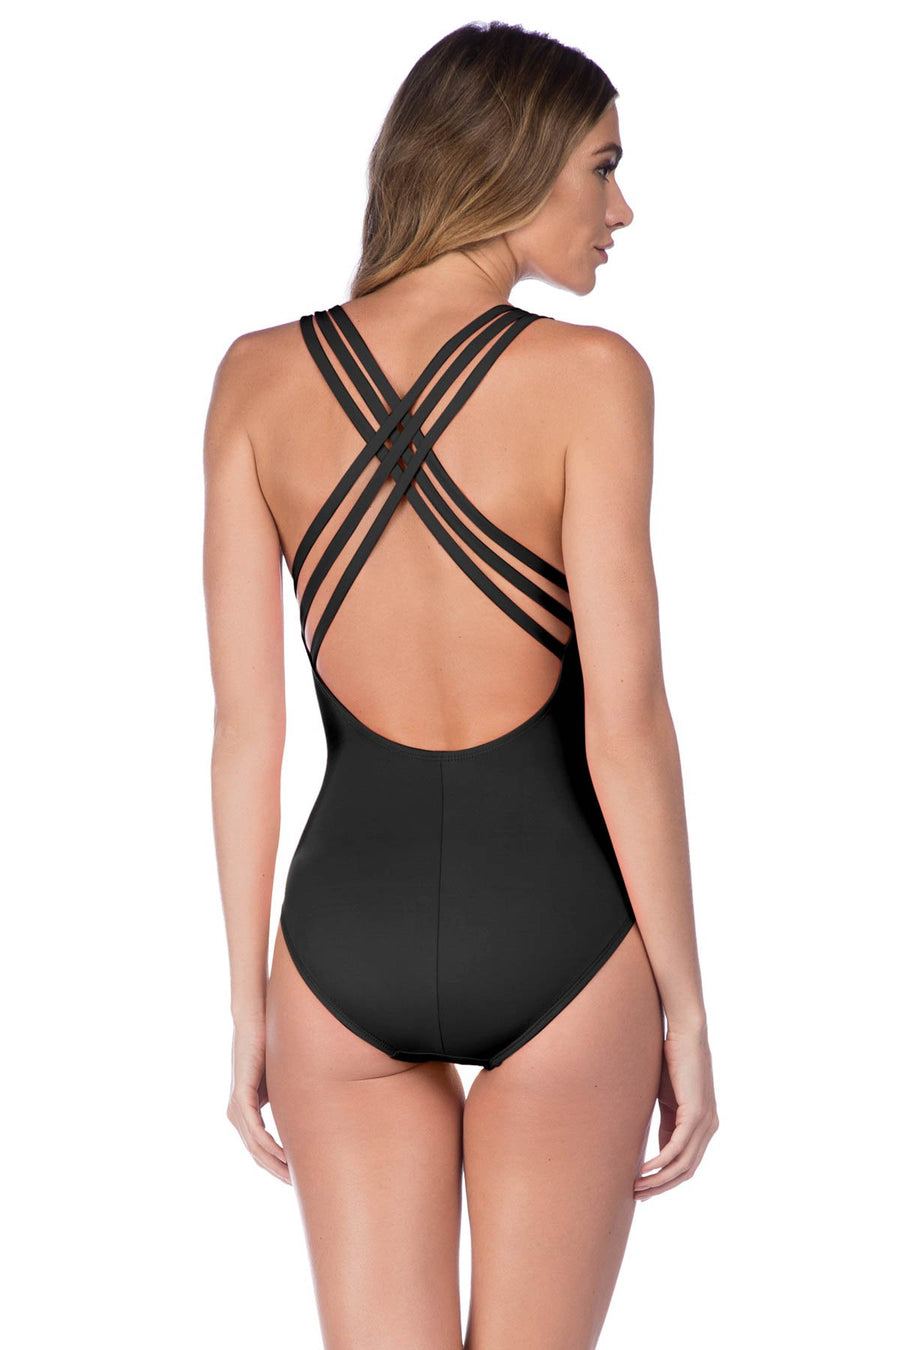 La Blanca Black Multi Strap Criss Cross Back One Piece - Key West Swimwear